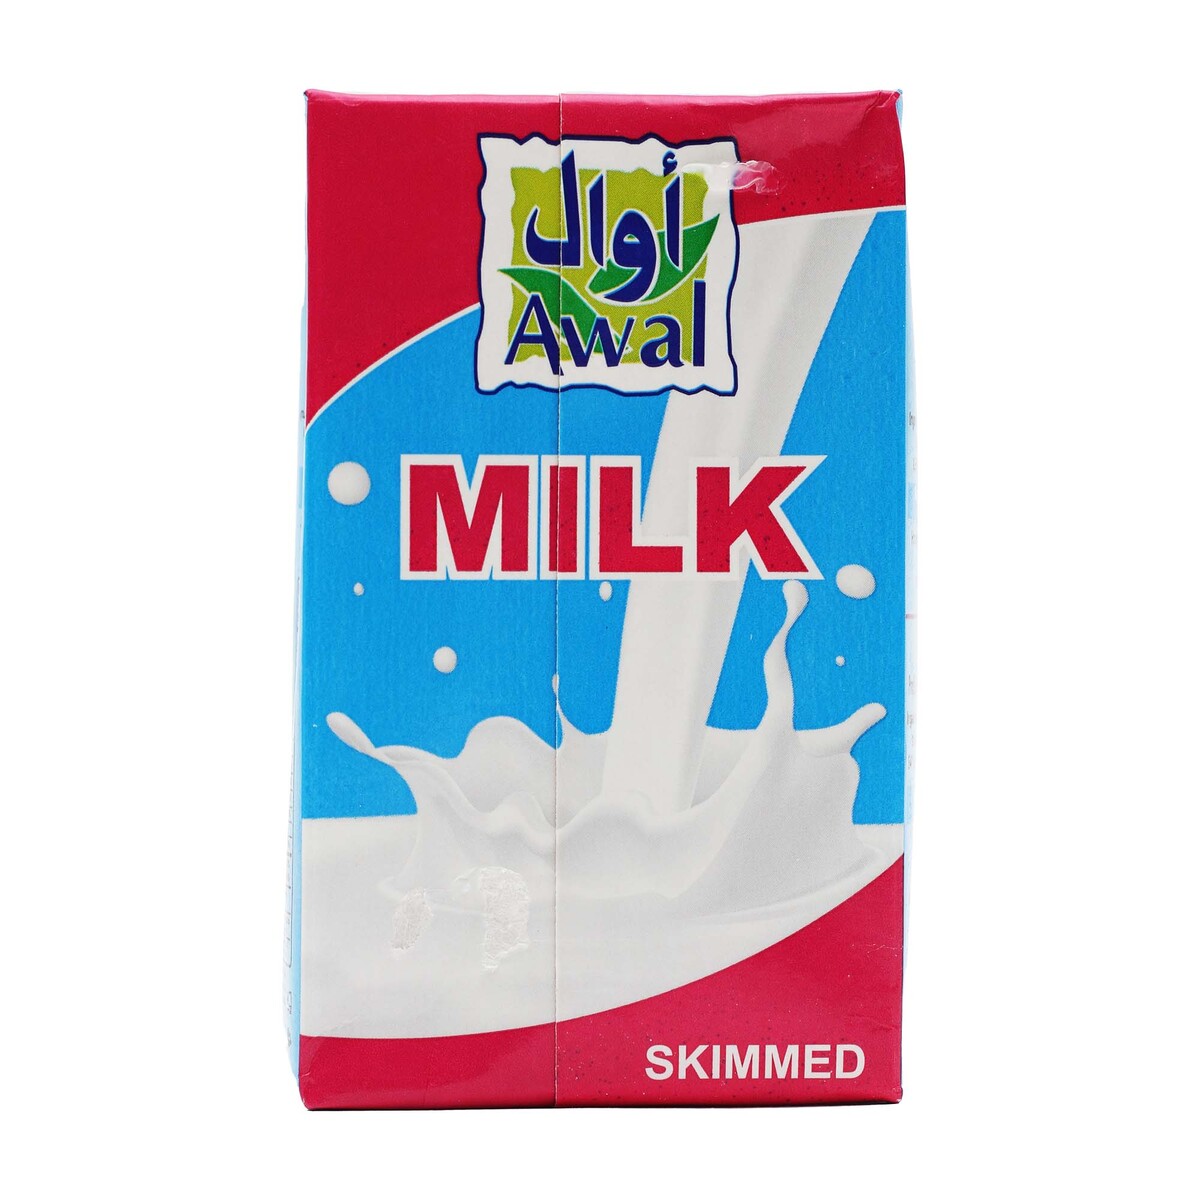 Awal Skimmed Milk 6 x 250ml